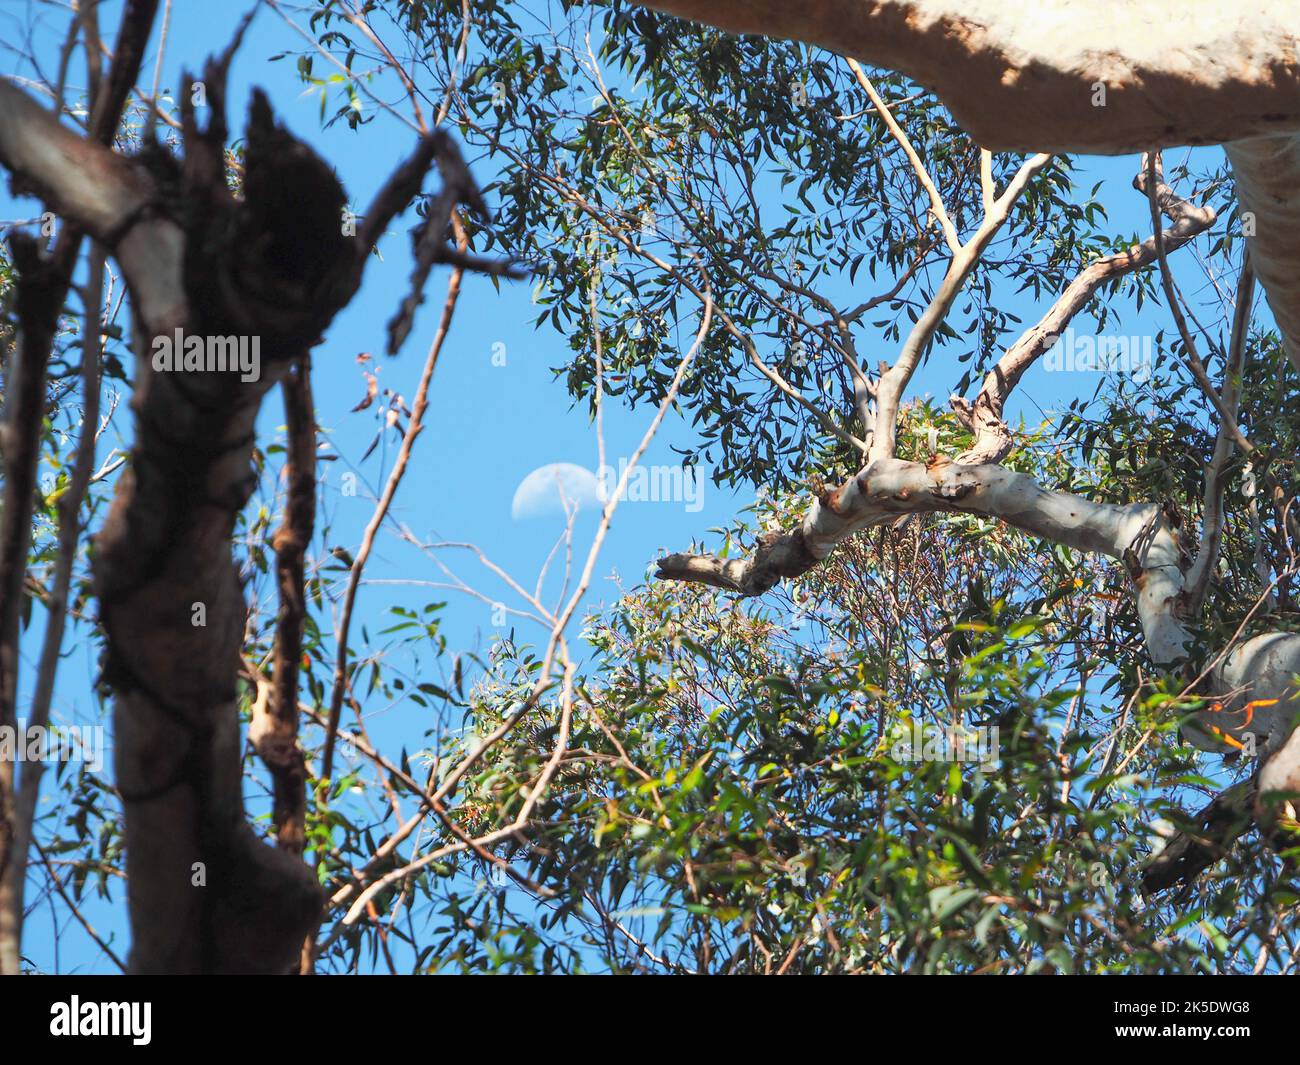 Nature, Une lune d'un jour dans le ciel bleu regardant à travers la canopée de parmi les feuilles de l'Eucalyptus Gum Tree, Australie Banque D'Images